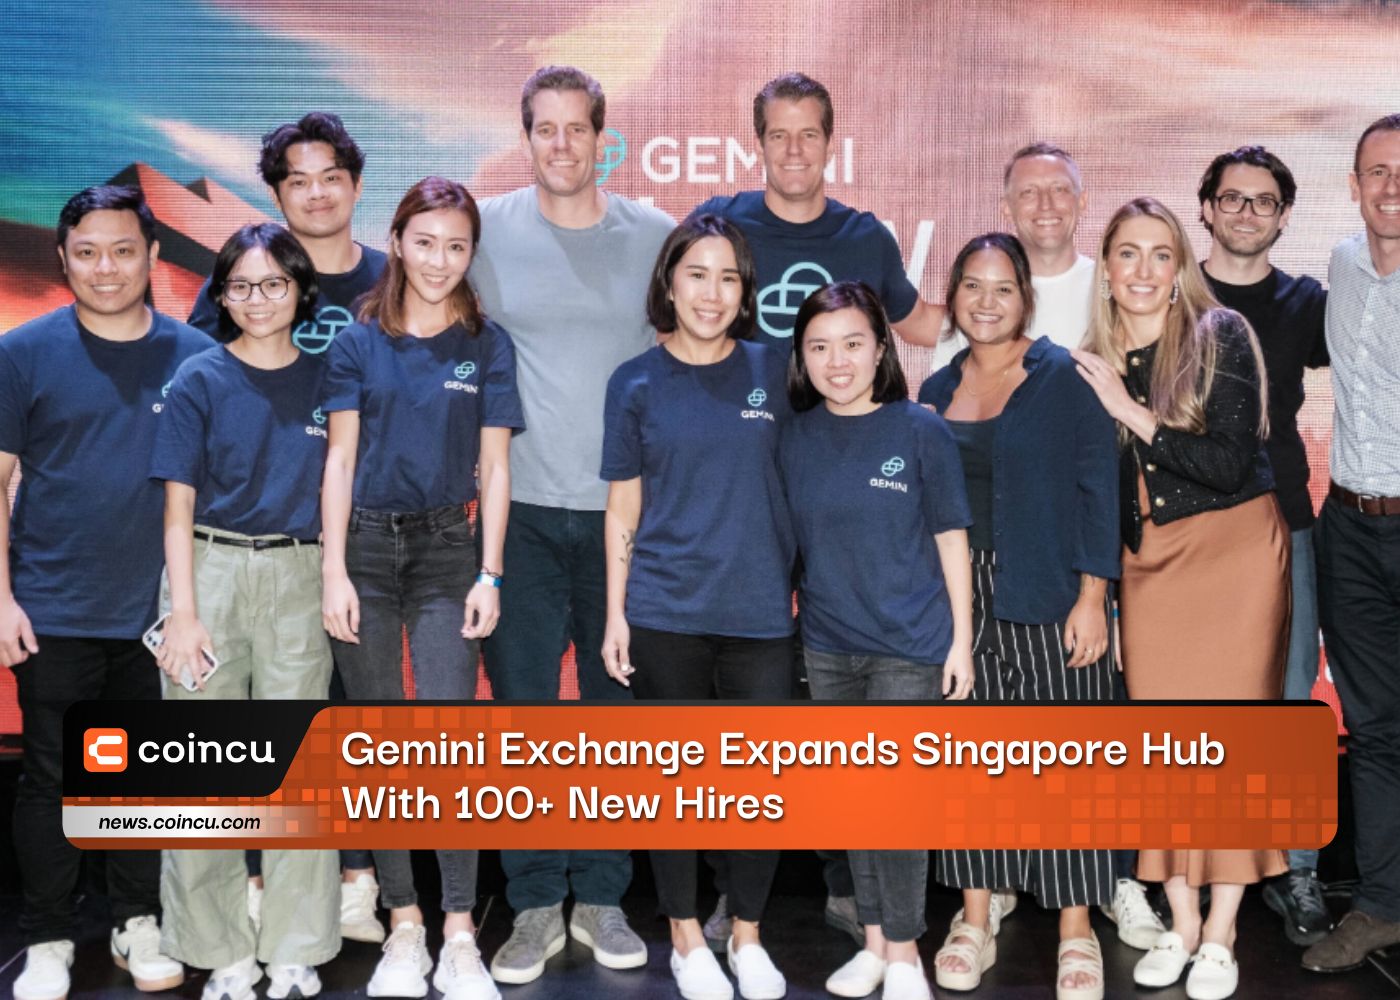 जेमिनी एक्सचेंज ने सिंगापुर हब का 100 से अधिक नई नियुक्तियों के साथ विस्तार किया